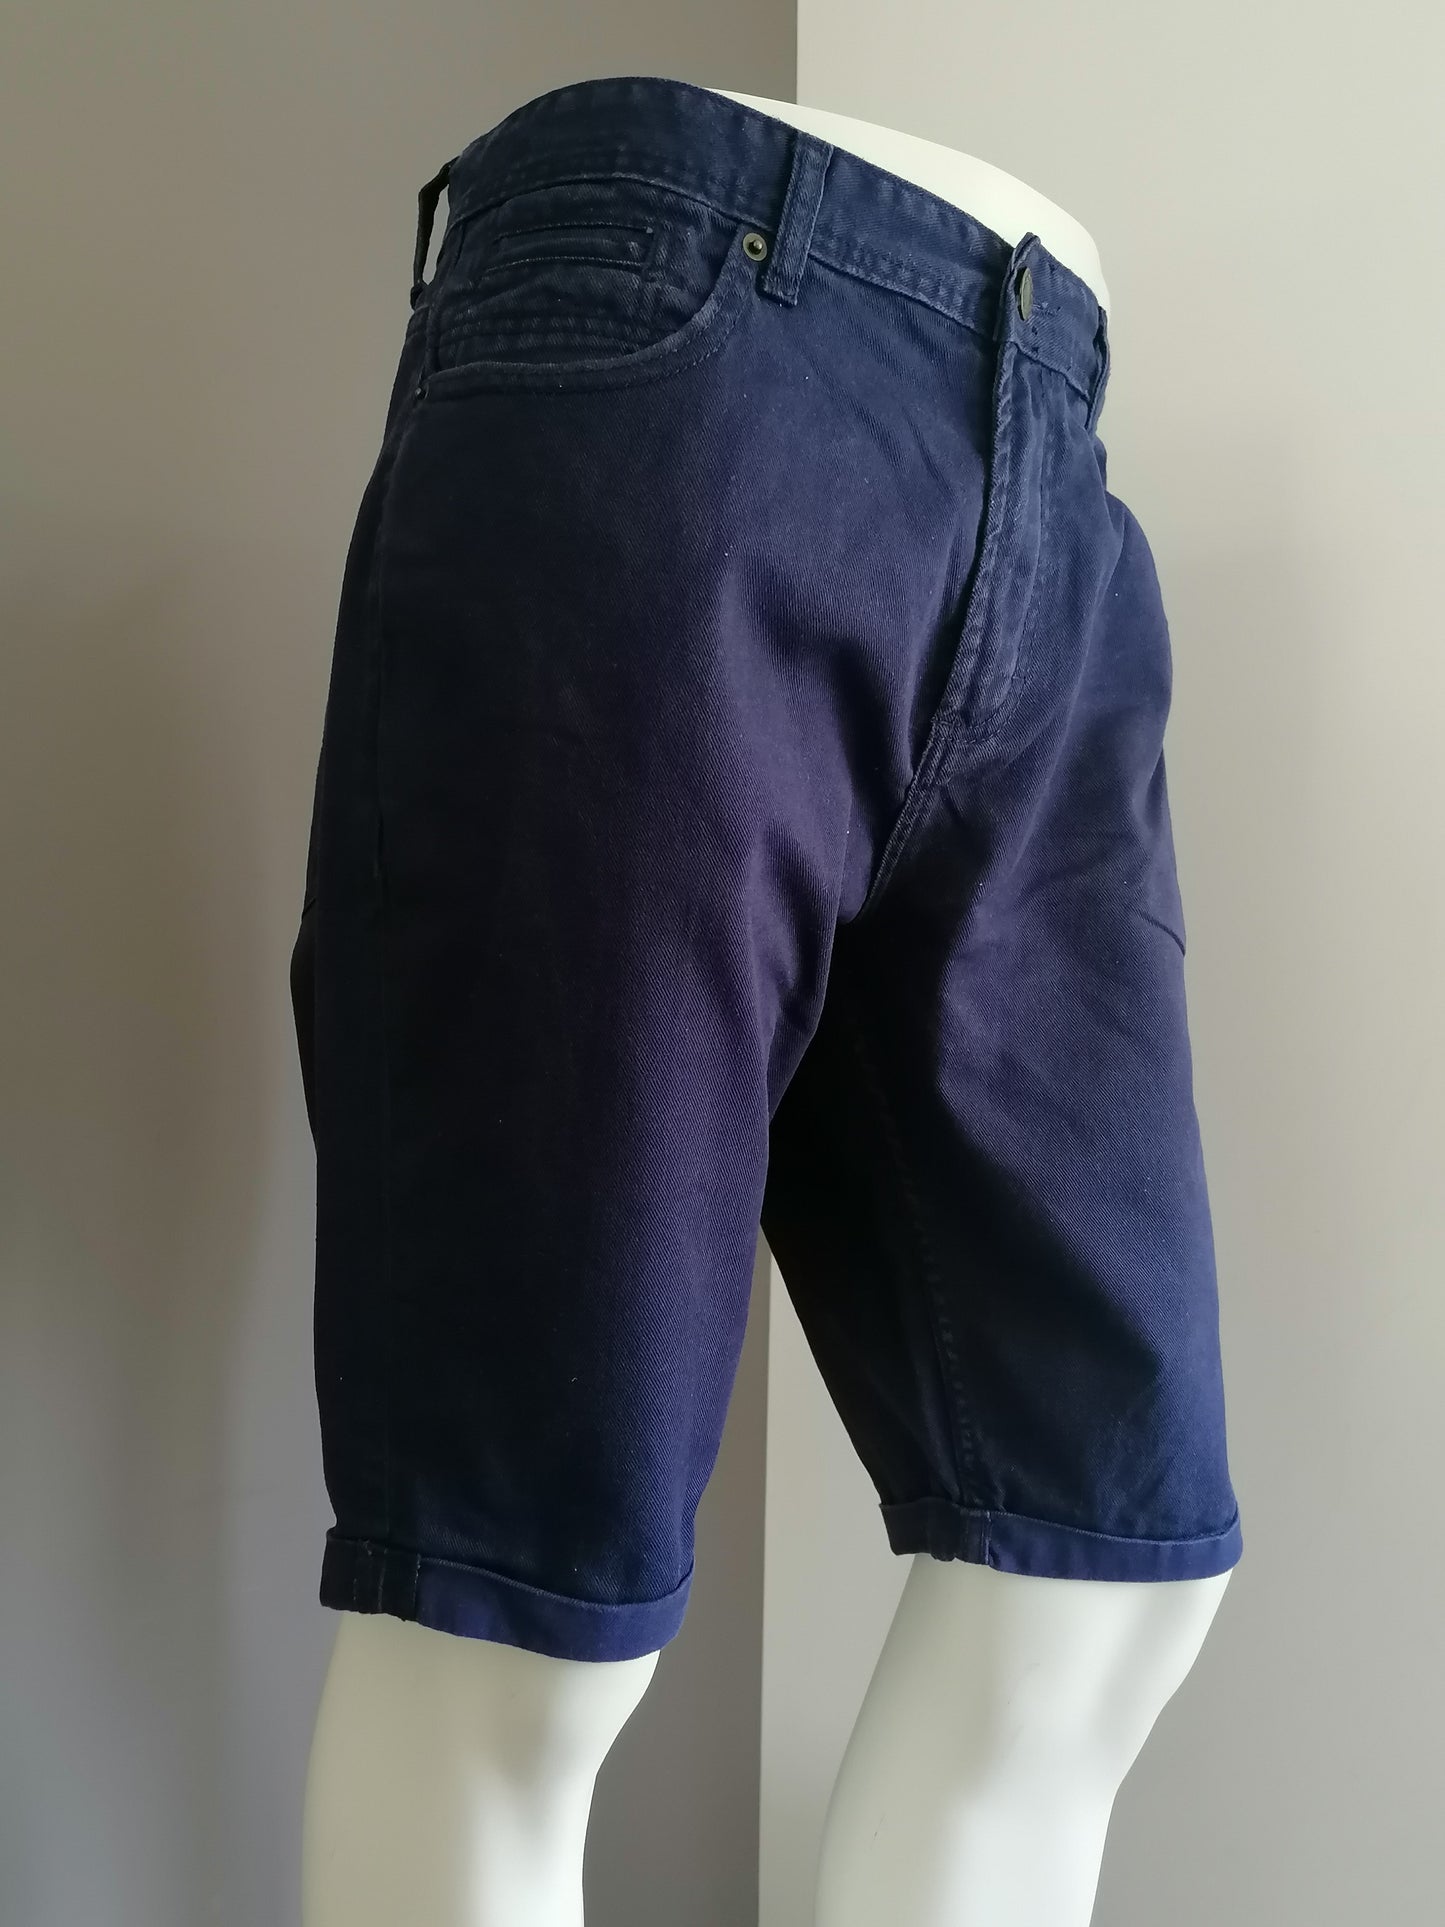 Pantaloncini di denim. Colorato blu scuro. Taglia W38.